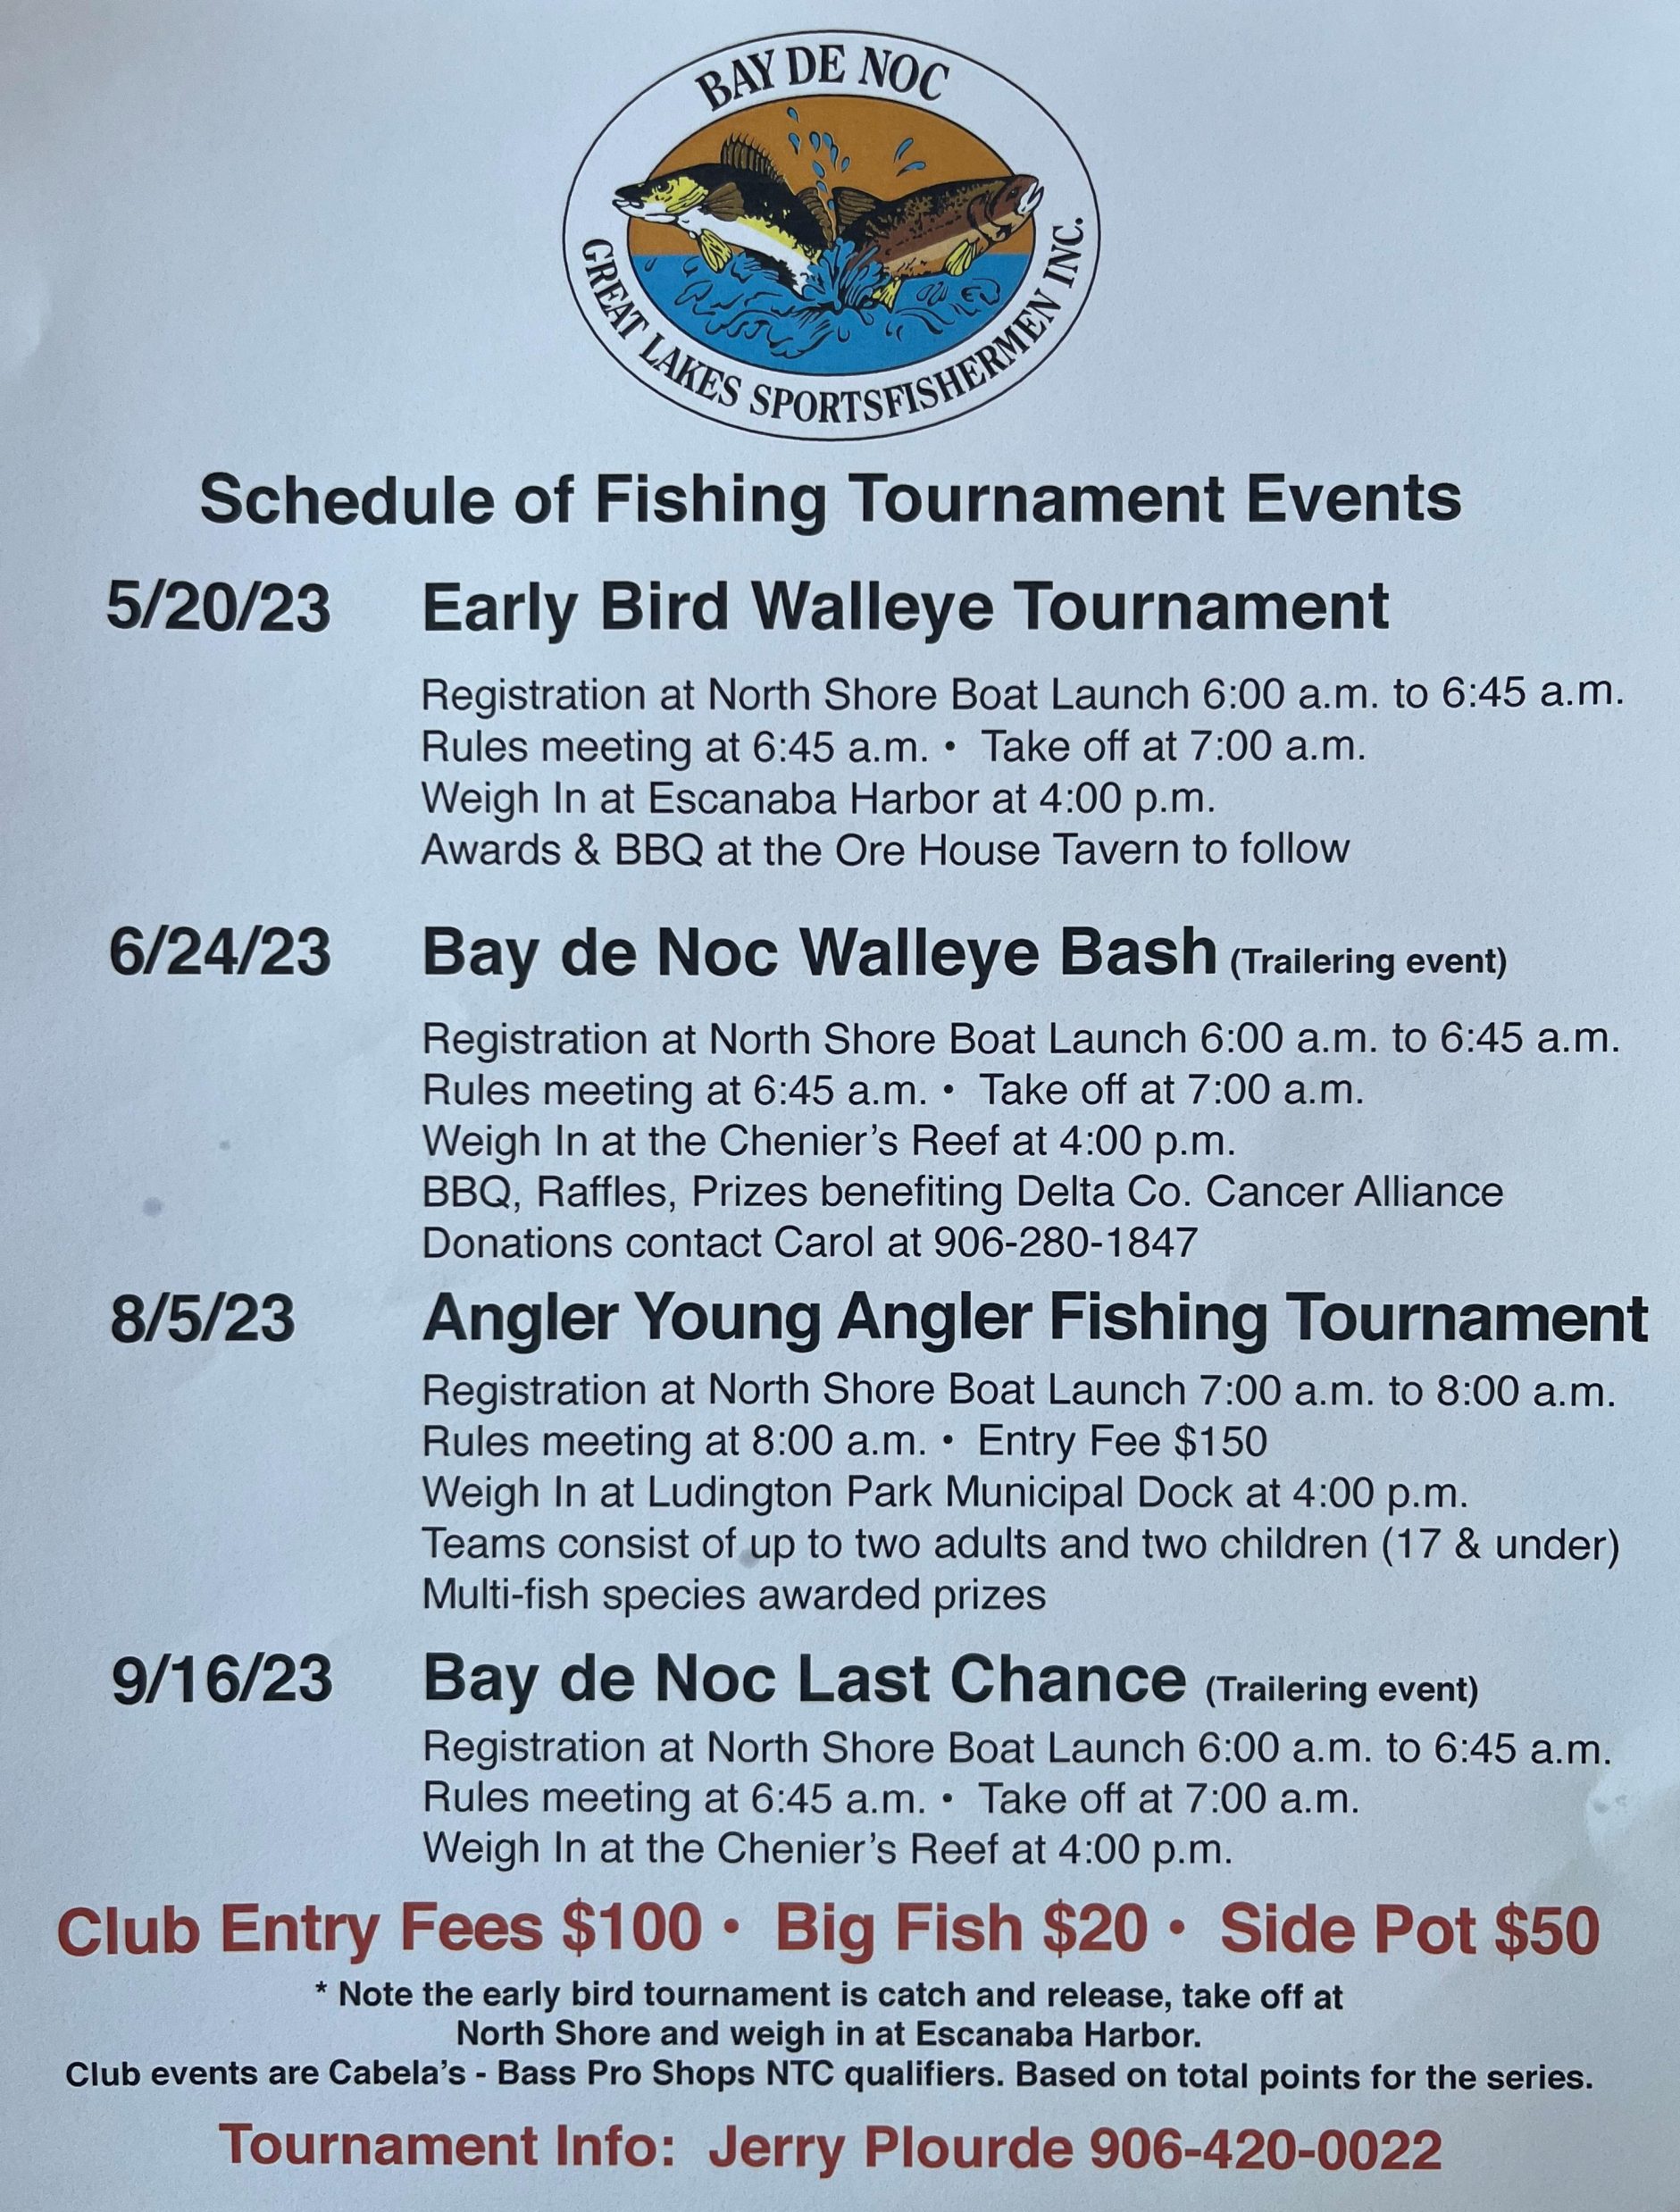 Bay De Noc Walleye Club Announces 2023 Schedule of Events